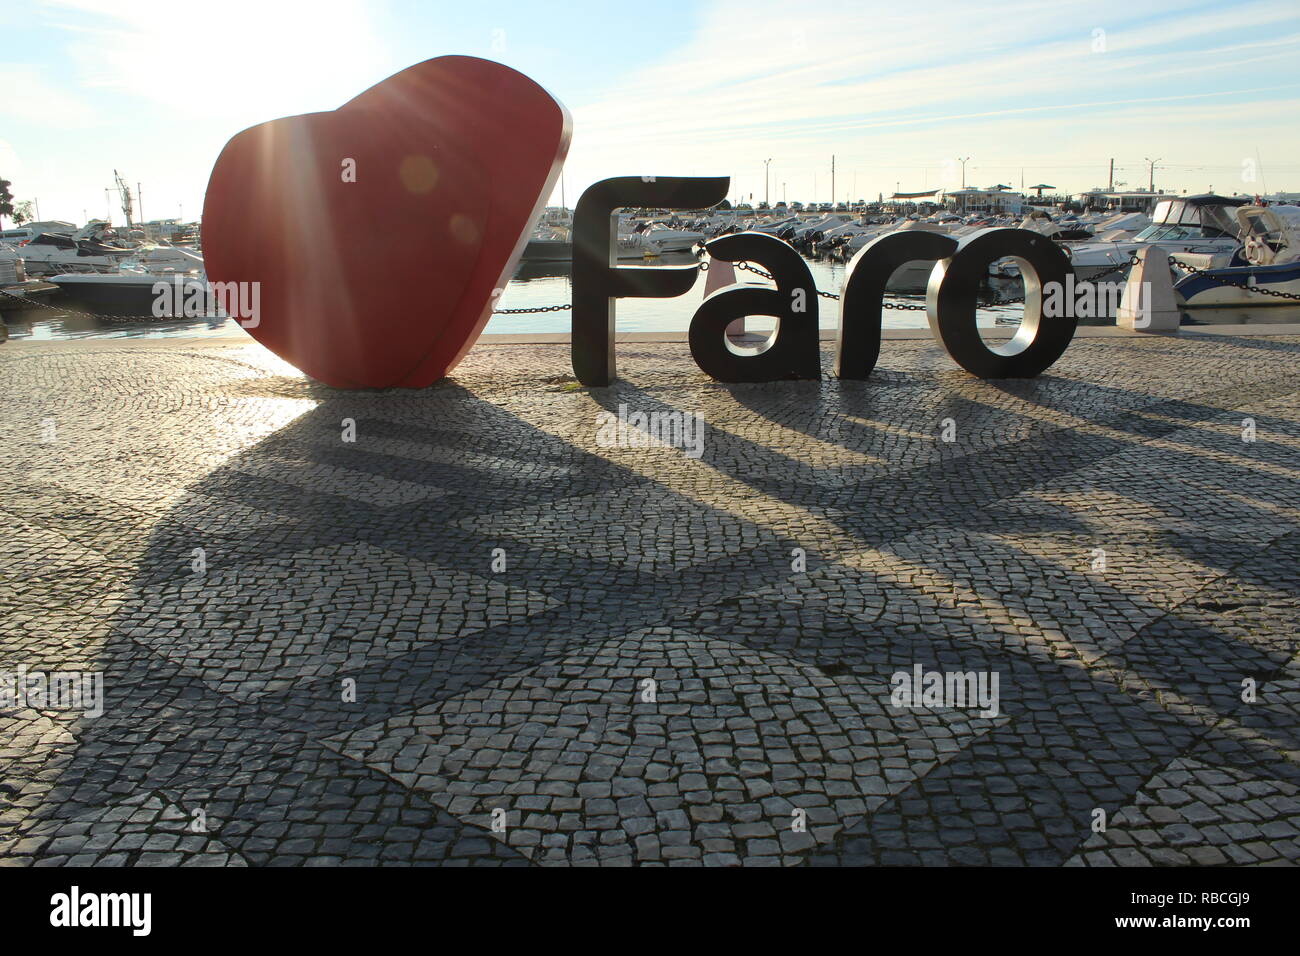 Faro, portugal Stock Photo